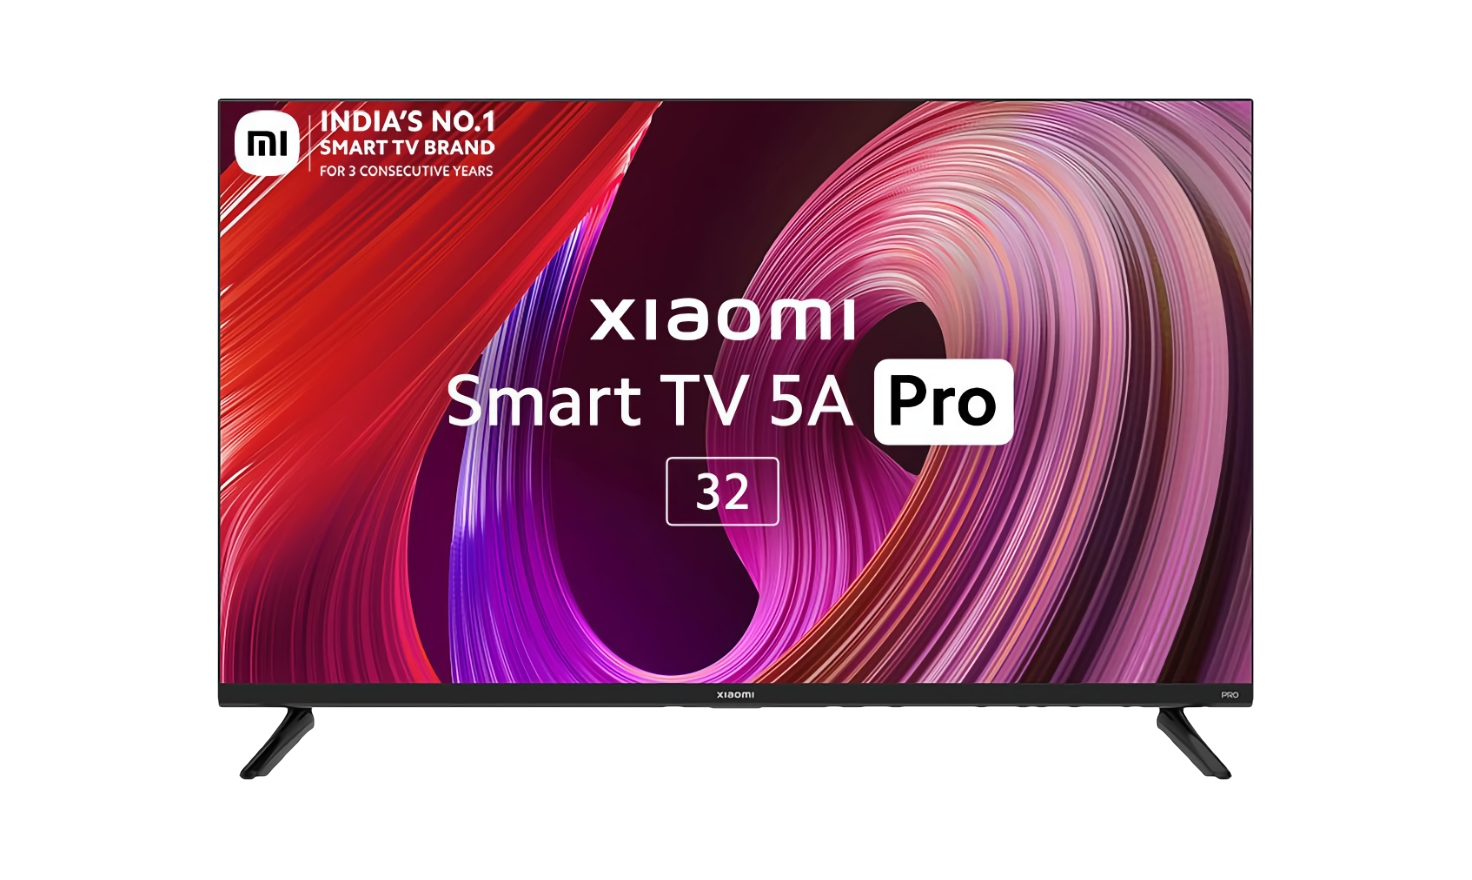 Xiaomi presenta la Smart TV 5A Pro de 32 pulgadas con altavoces de 24W,  1,5GB de RAM y Android TV a bordo por 215 dólares